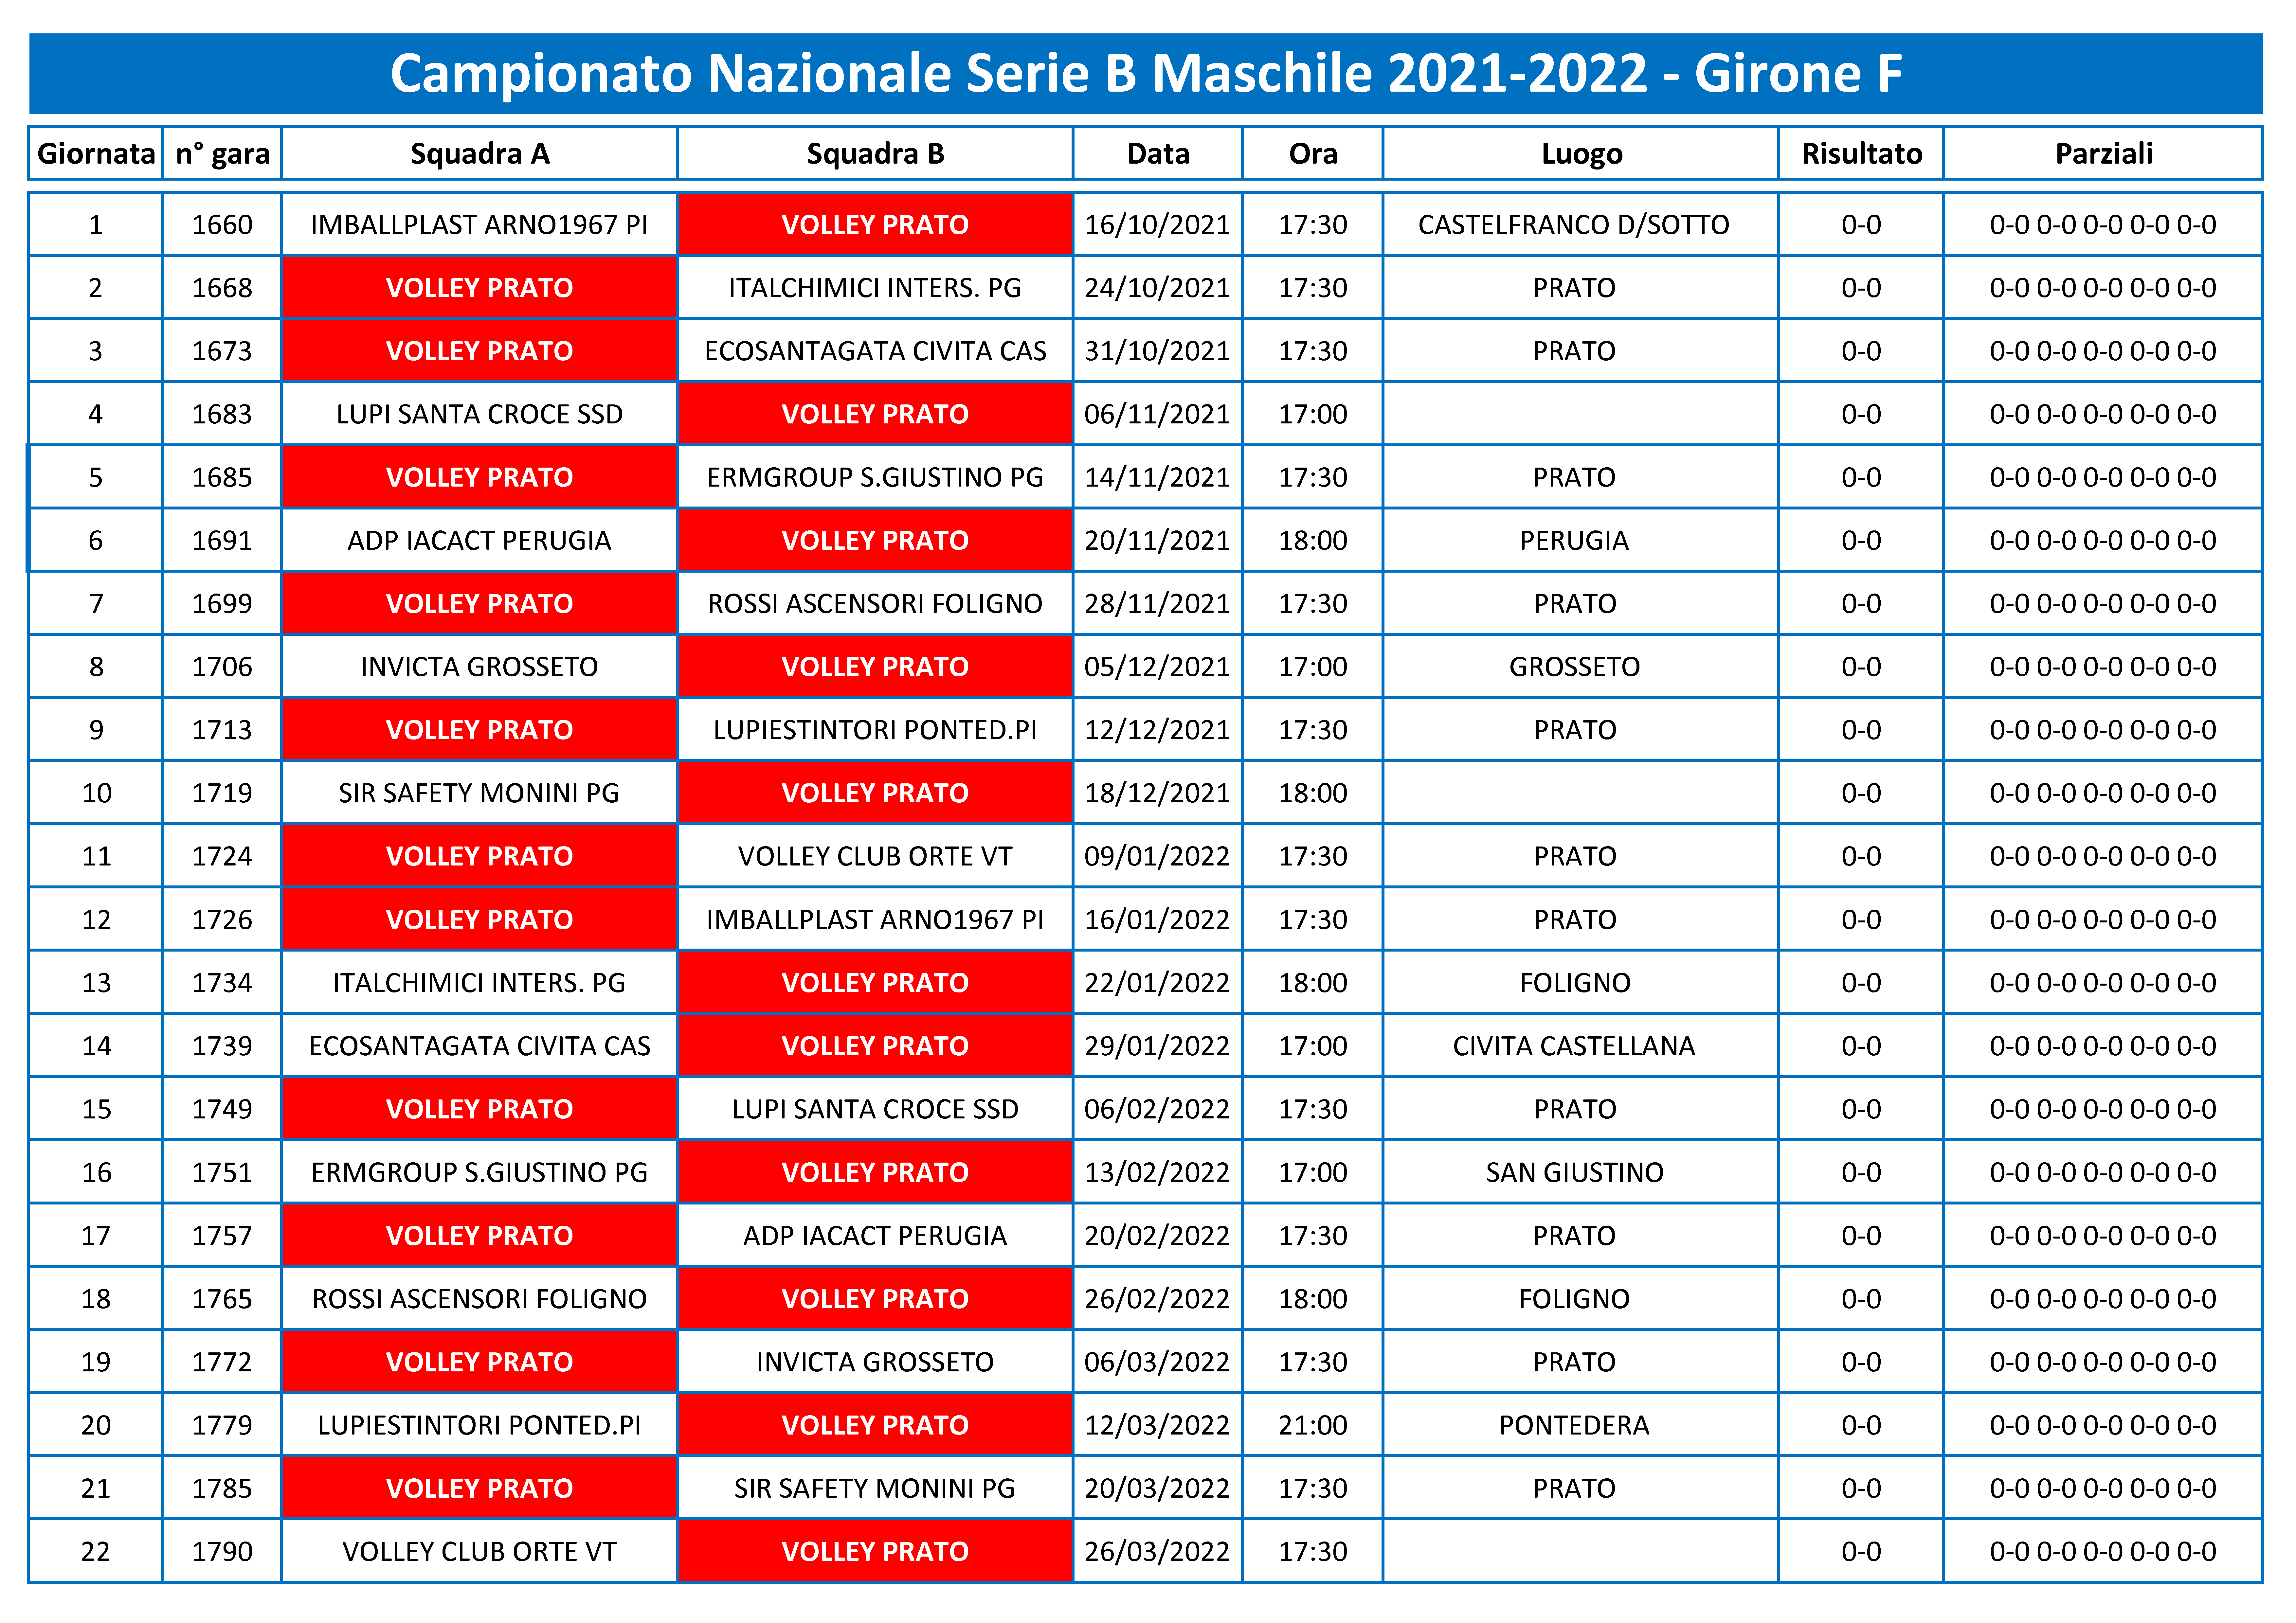 Calendario Serie B 2021-2022png